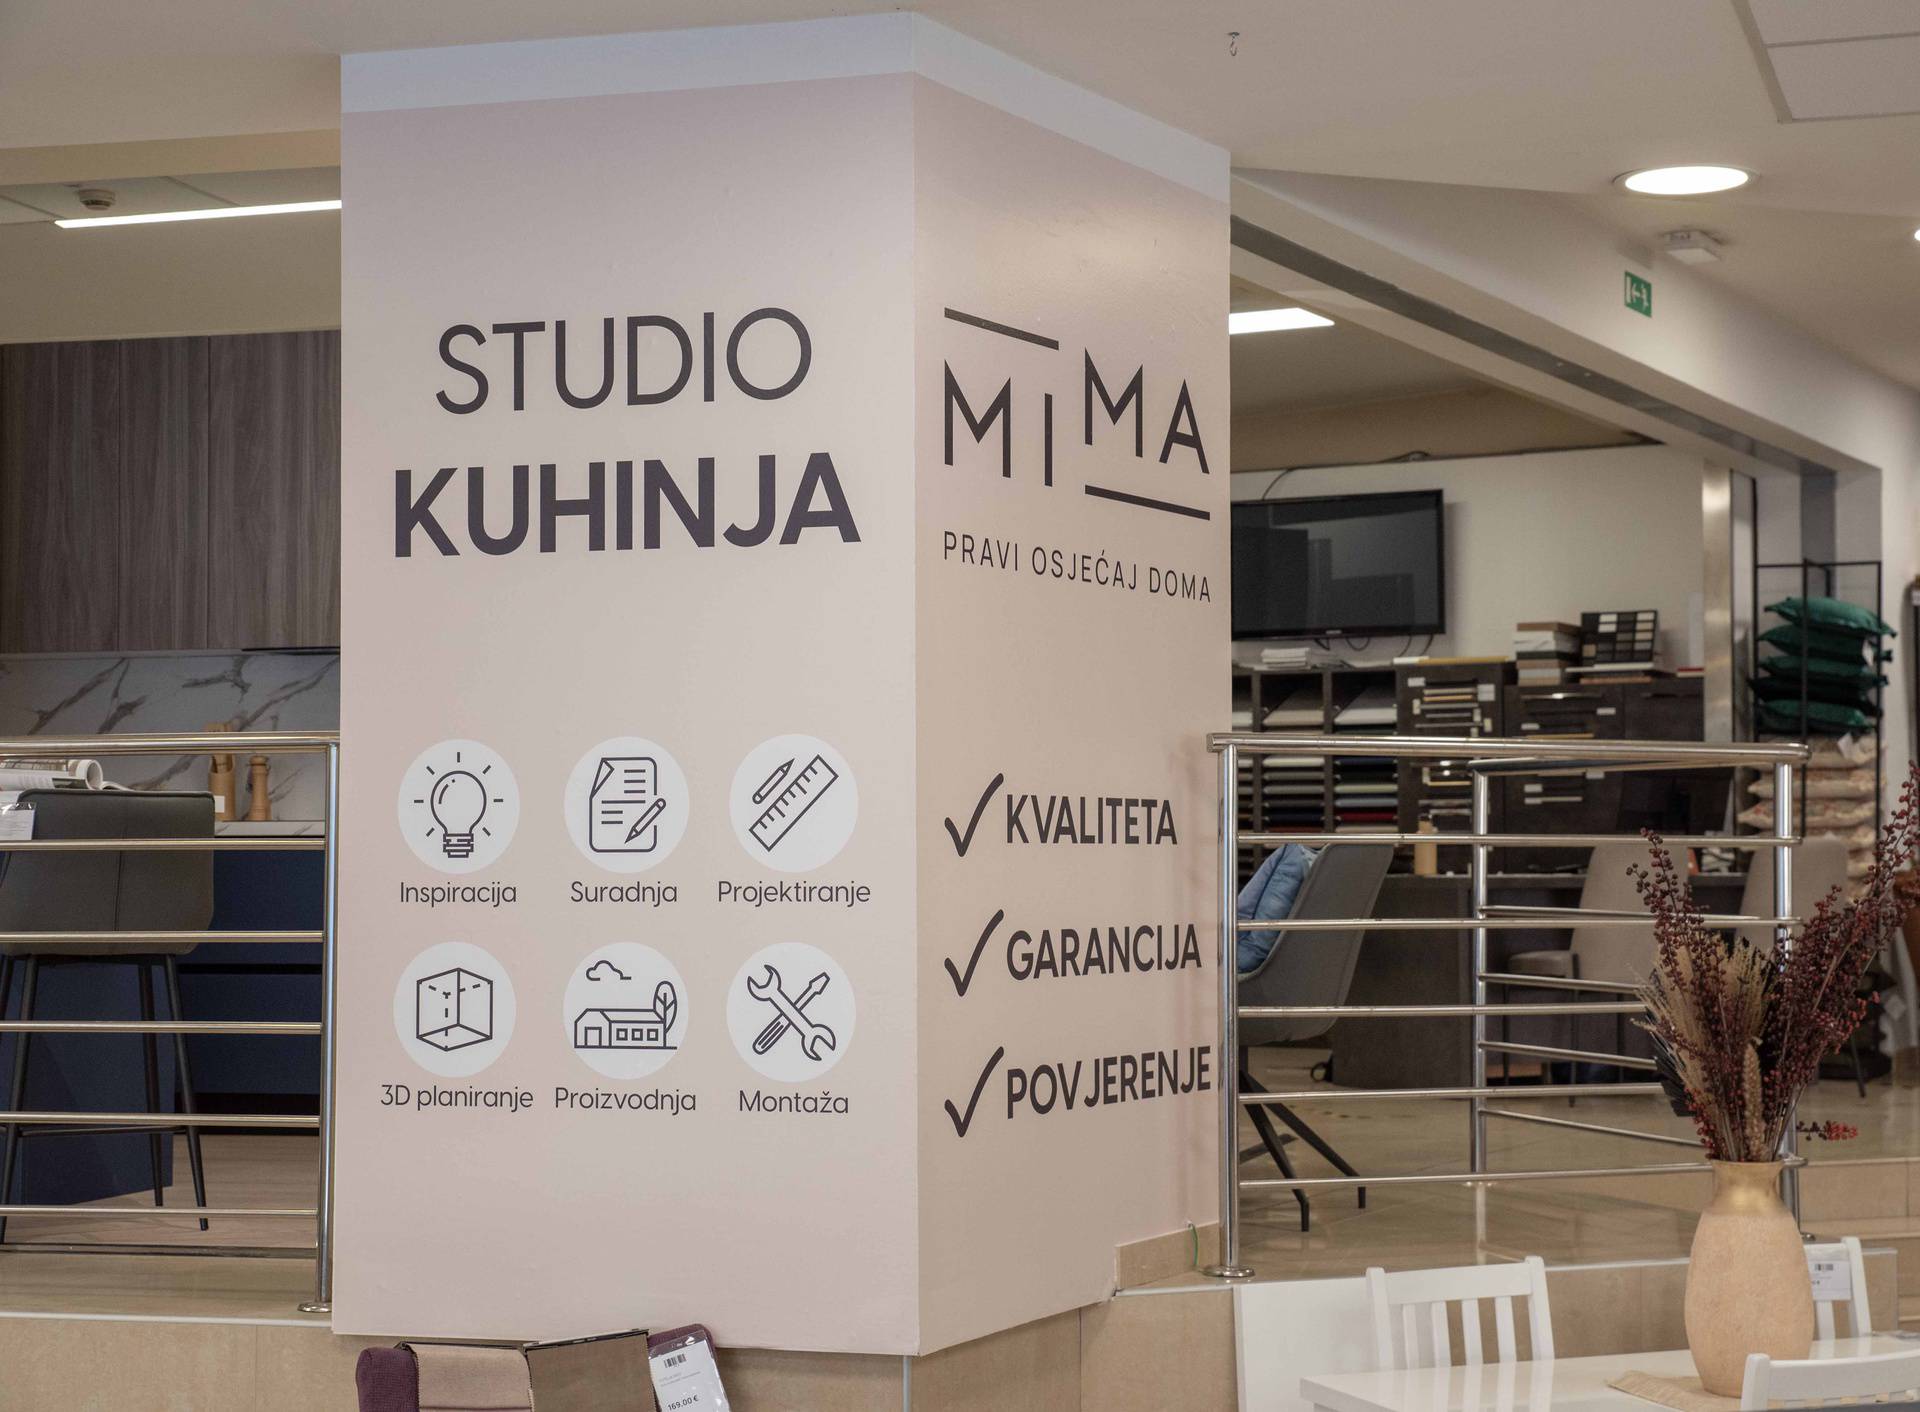 Mima predstavlja svoj prvi studio kuhinja